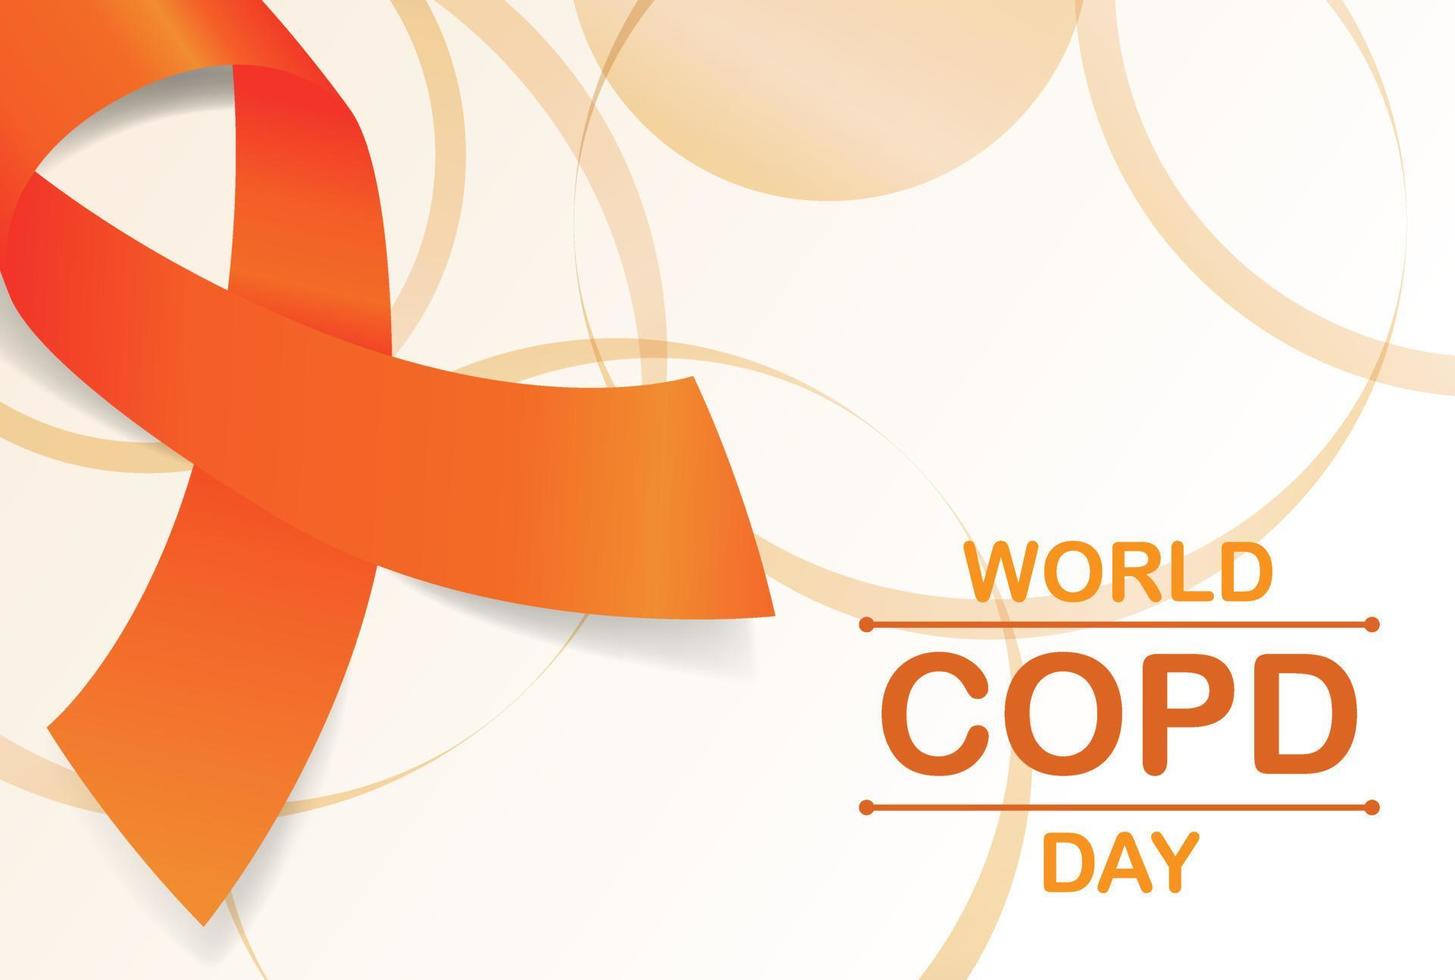 dia mundial da copd banner ilustração de fita doença pulmonar obstrutiva crônica 1 vetor